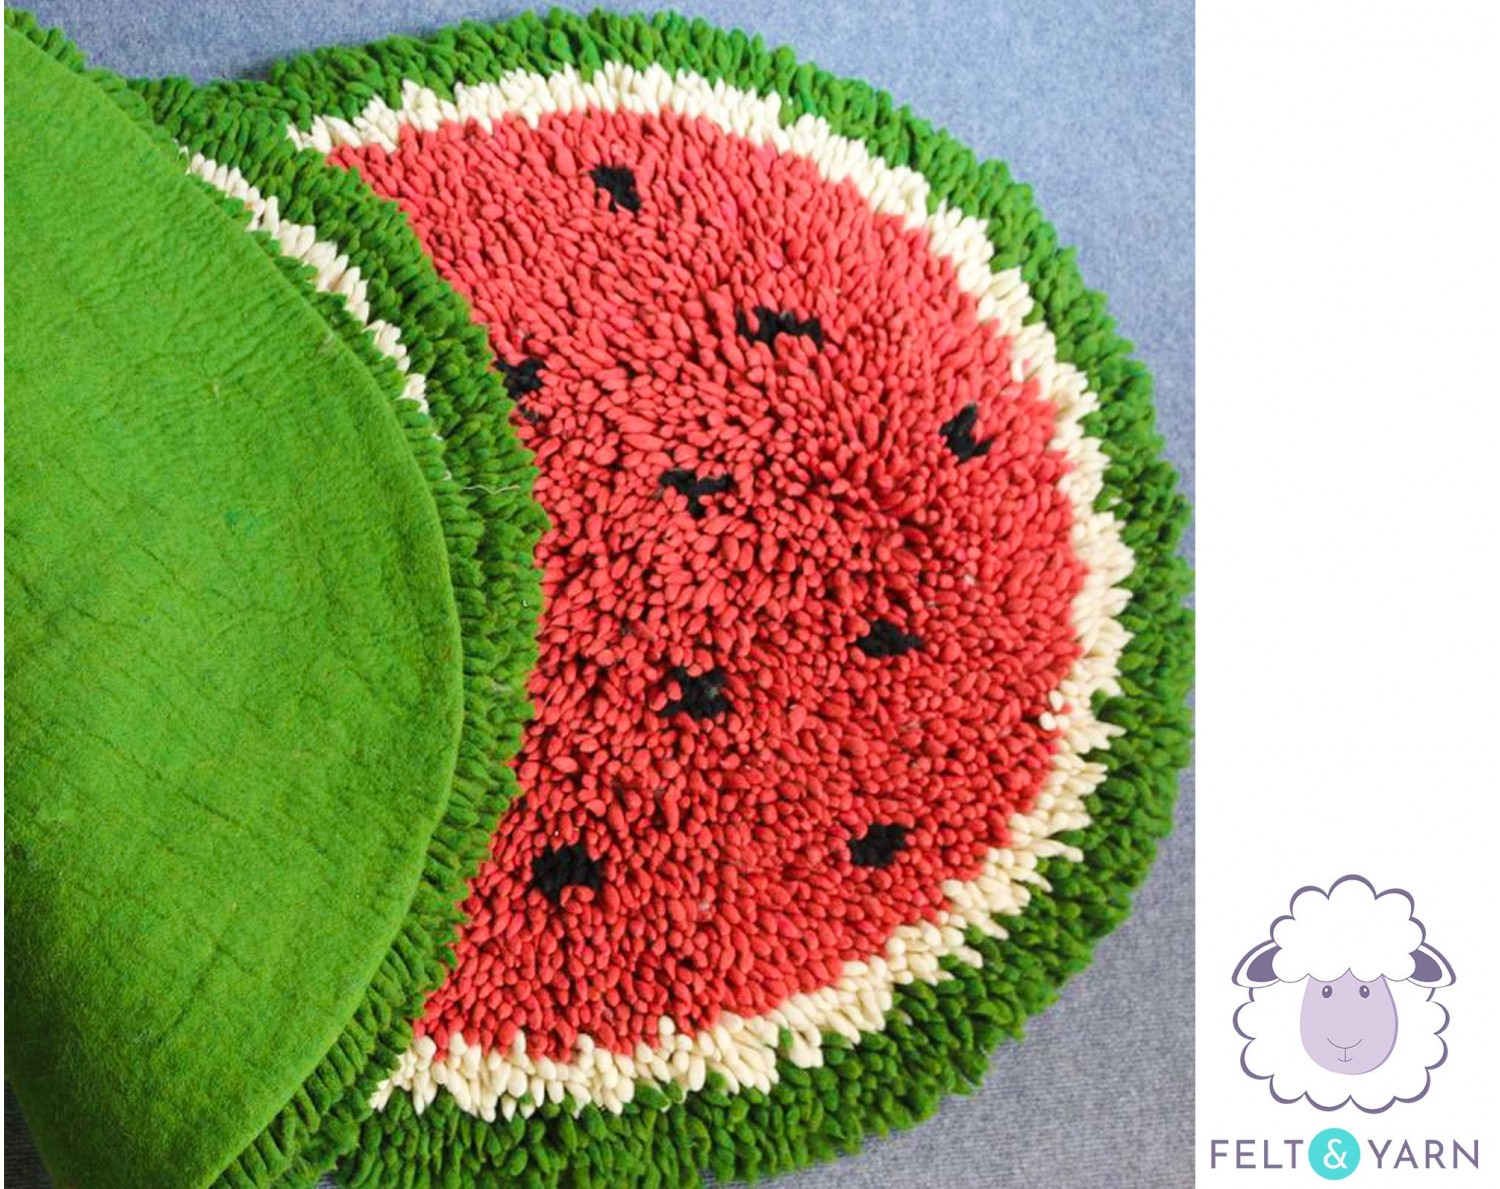 Unique Full Watermelon Shag Rug - Felt & Yarn